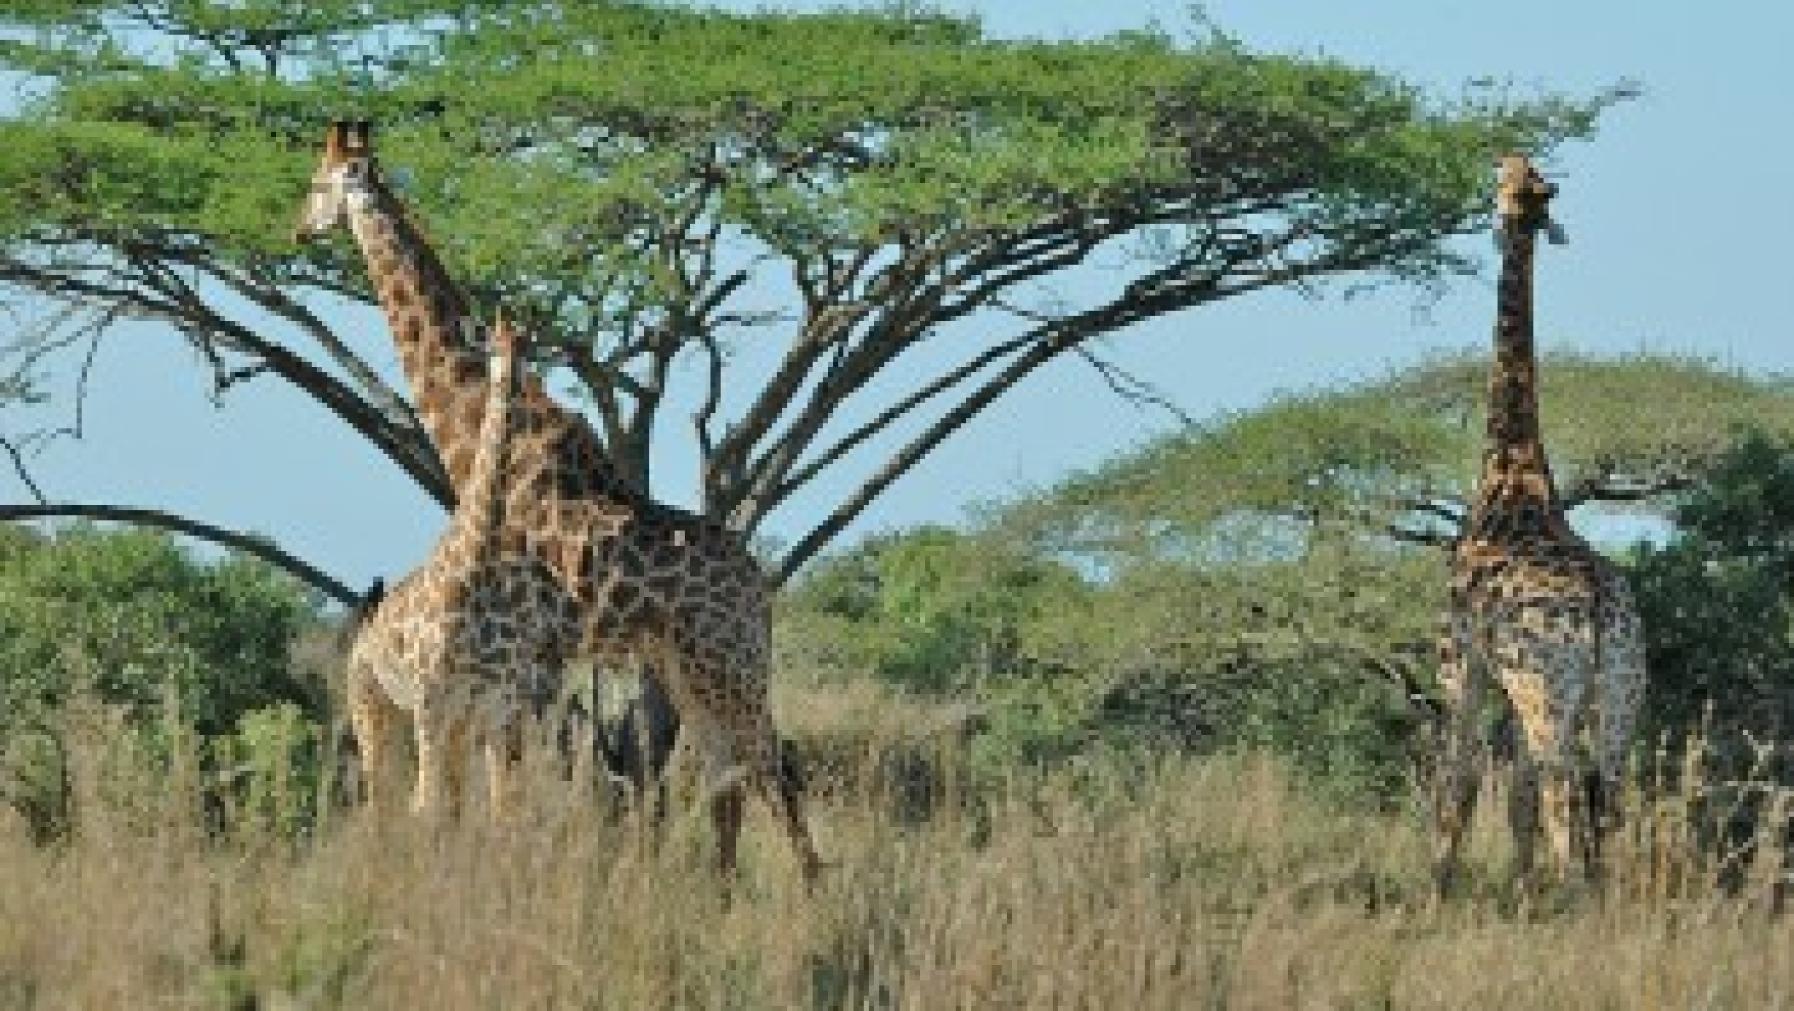 Giraffe S12343.jpg